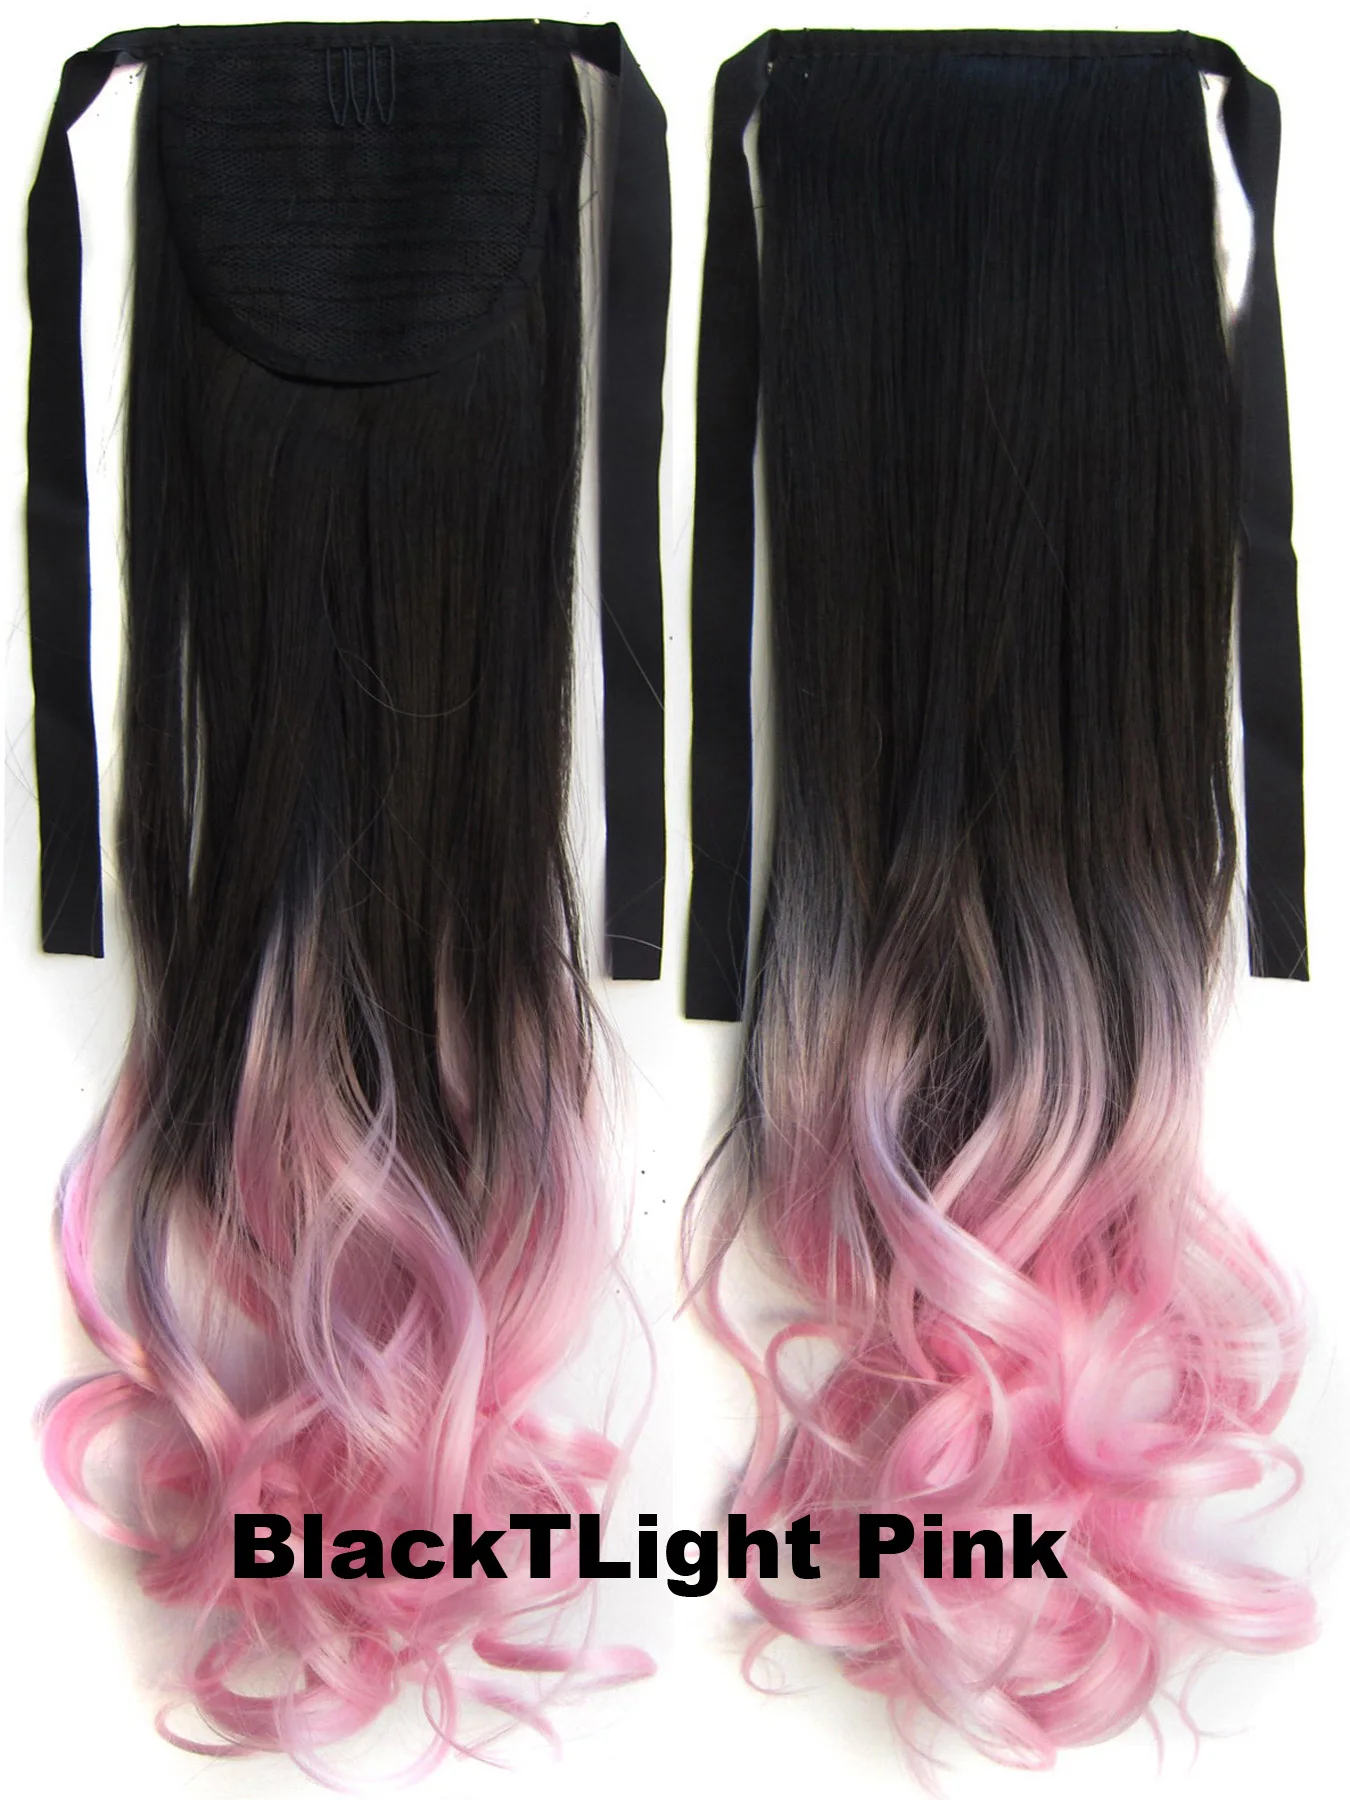 Similler вьющиеся волосы для наращивания вокруг конского хвоста, синтетические волосы для женщин, черный, розовый цвет